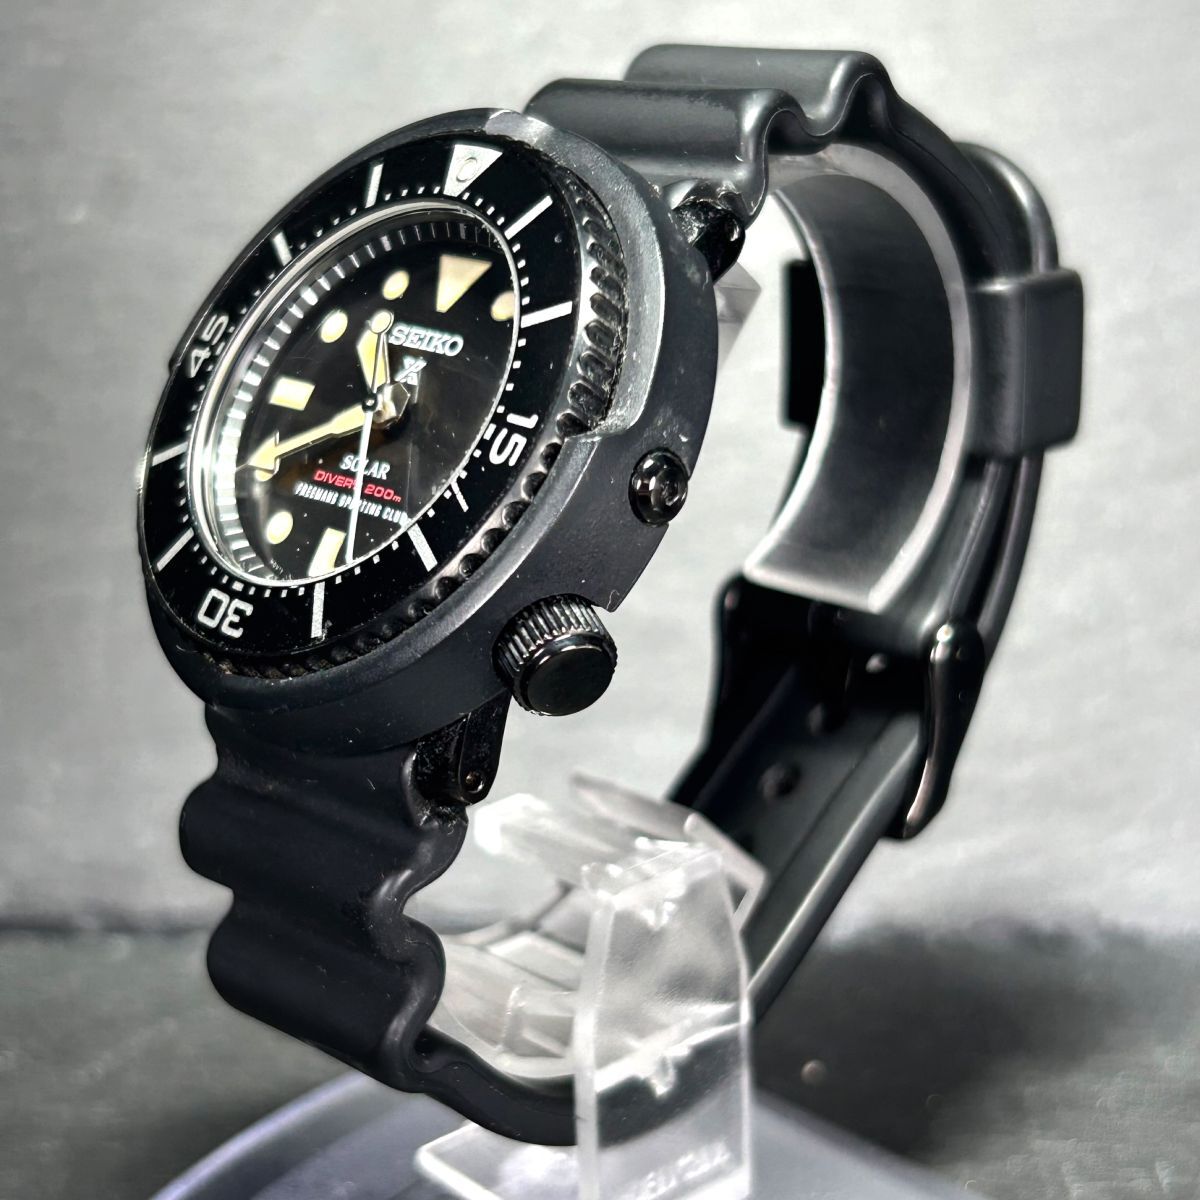 400本限定 フリーメンズスポーティングクラブ限定 SEIKO セイコー PROSPEX プロスペックス SBDN029 腕時計 ダイバーソーラー アナログ 黒_画像4